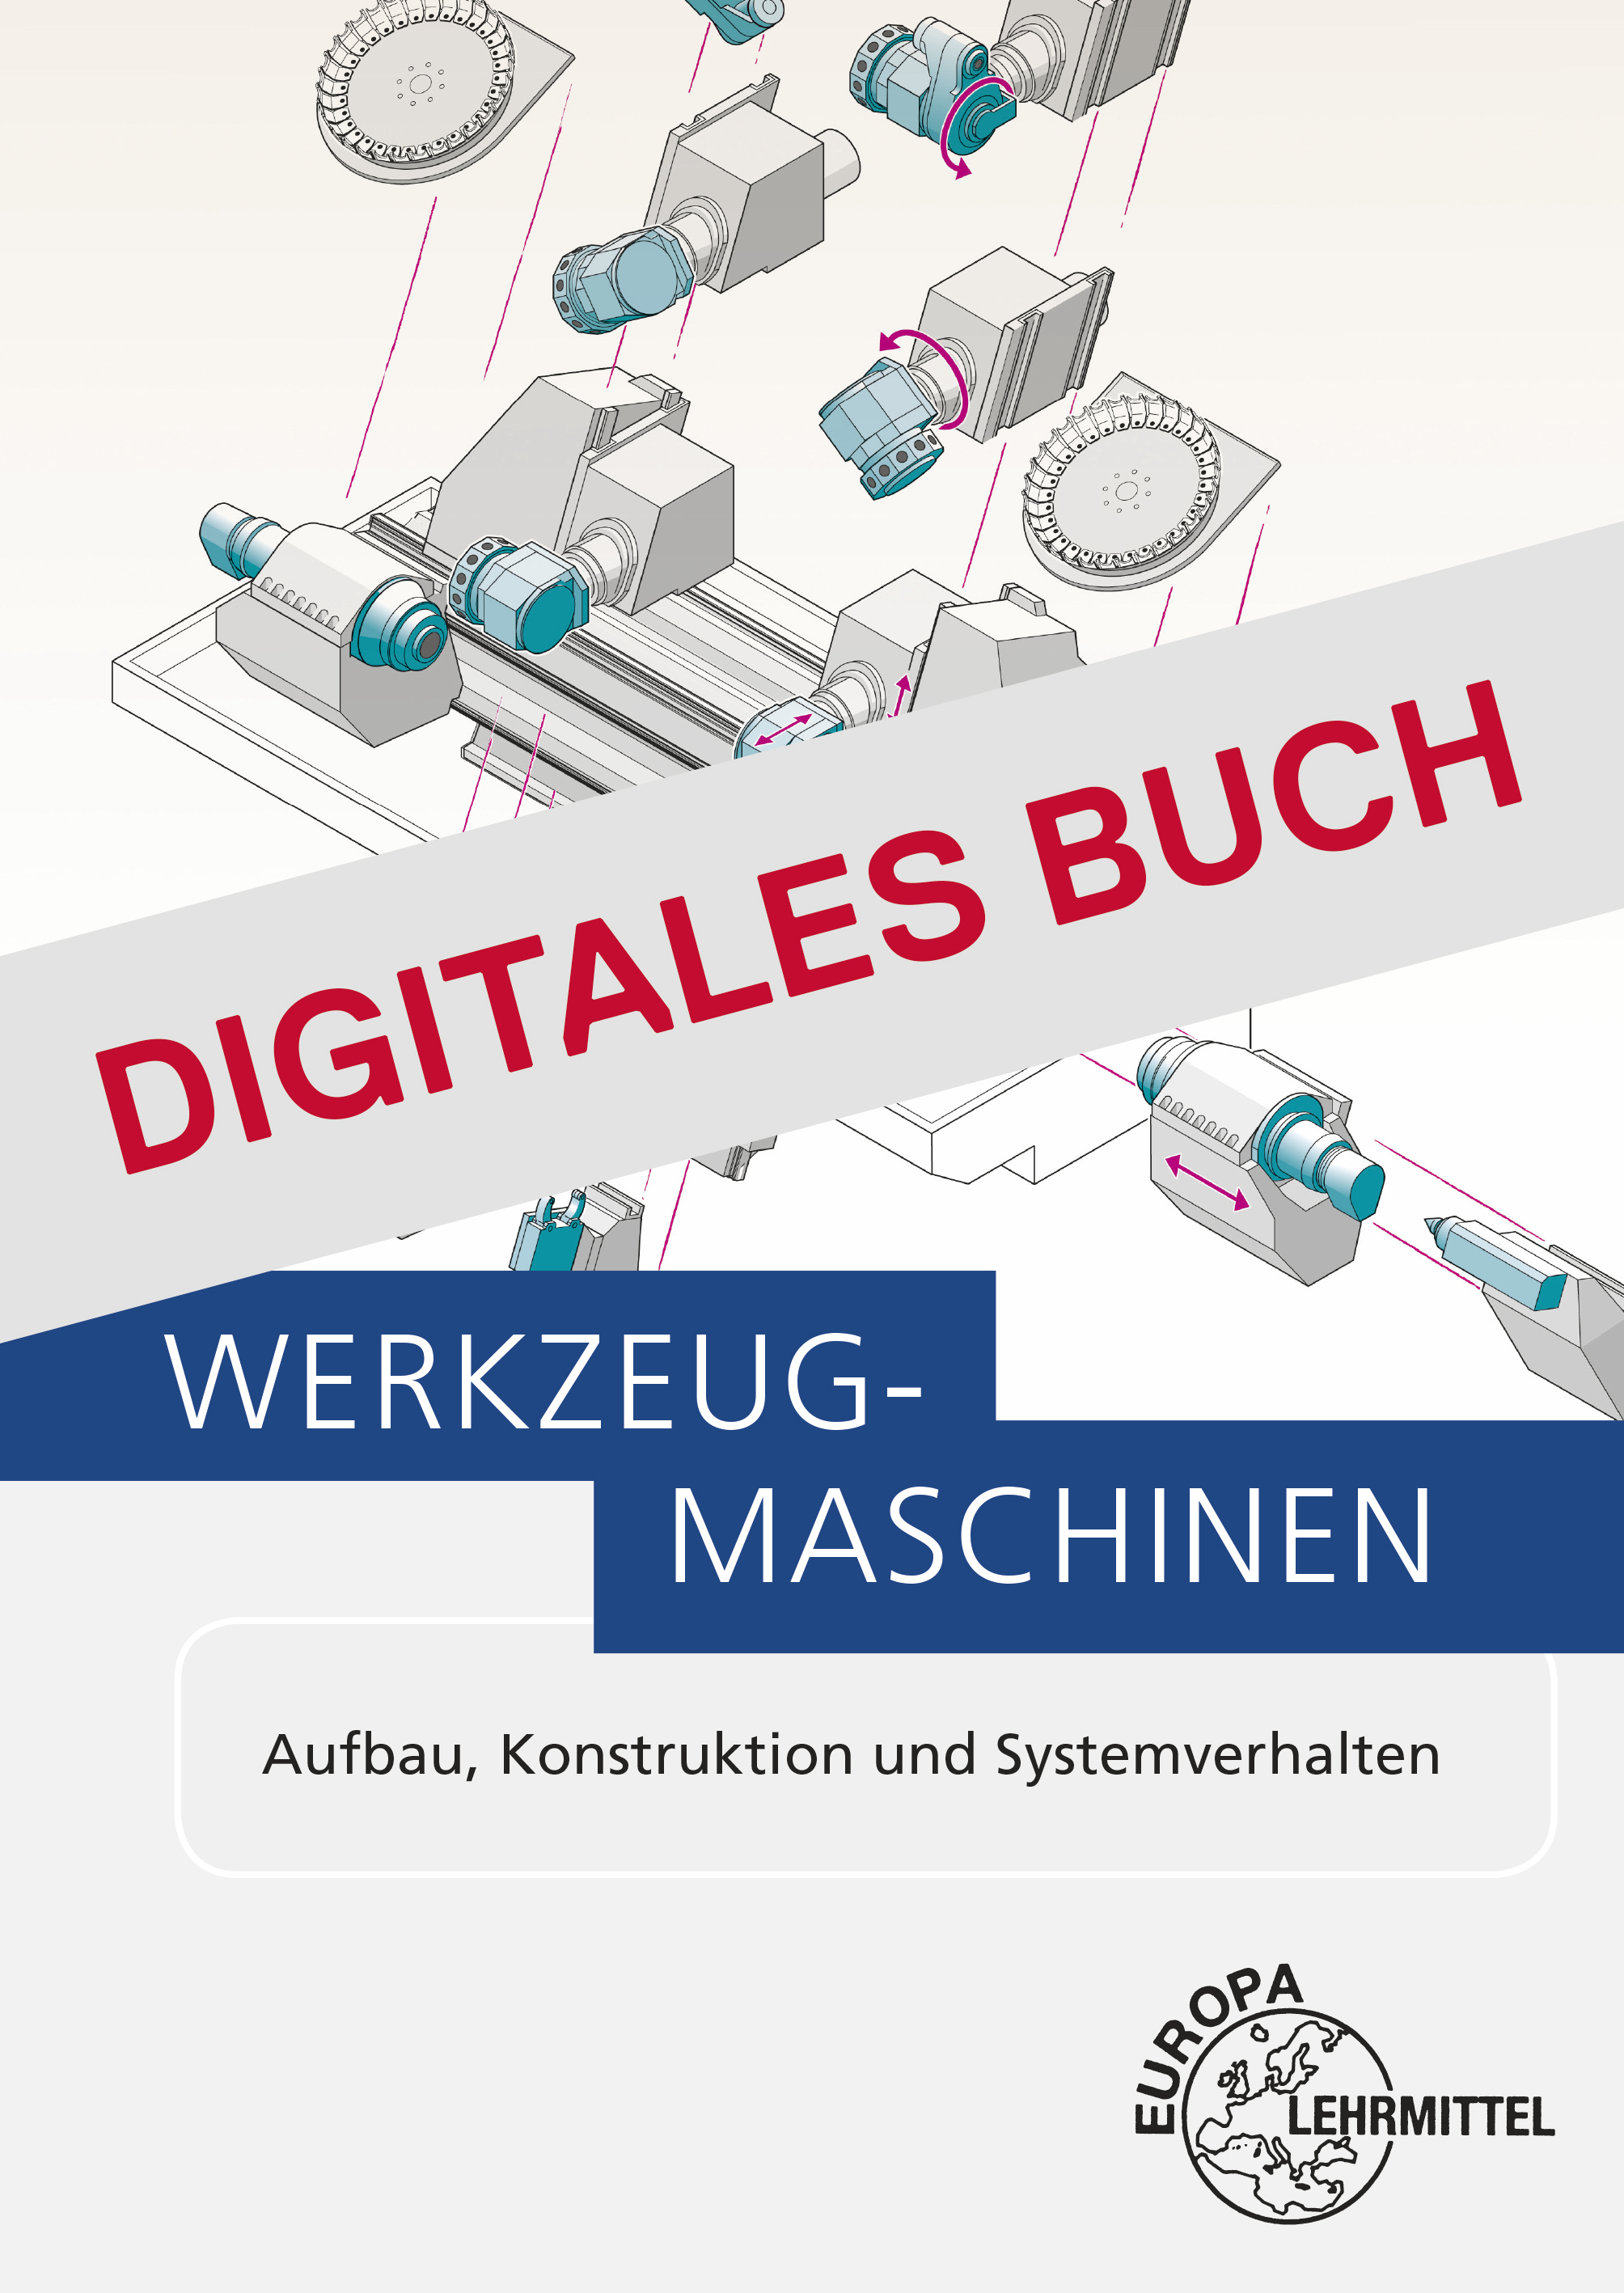 Werkzeugmaschinen - Digitales Buch